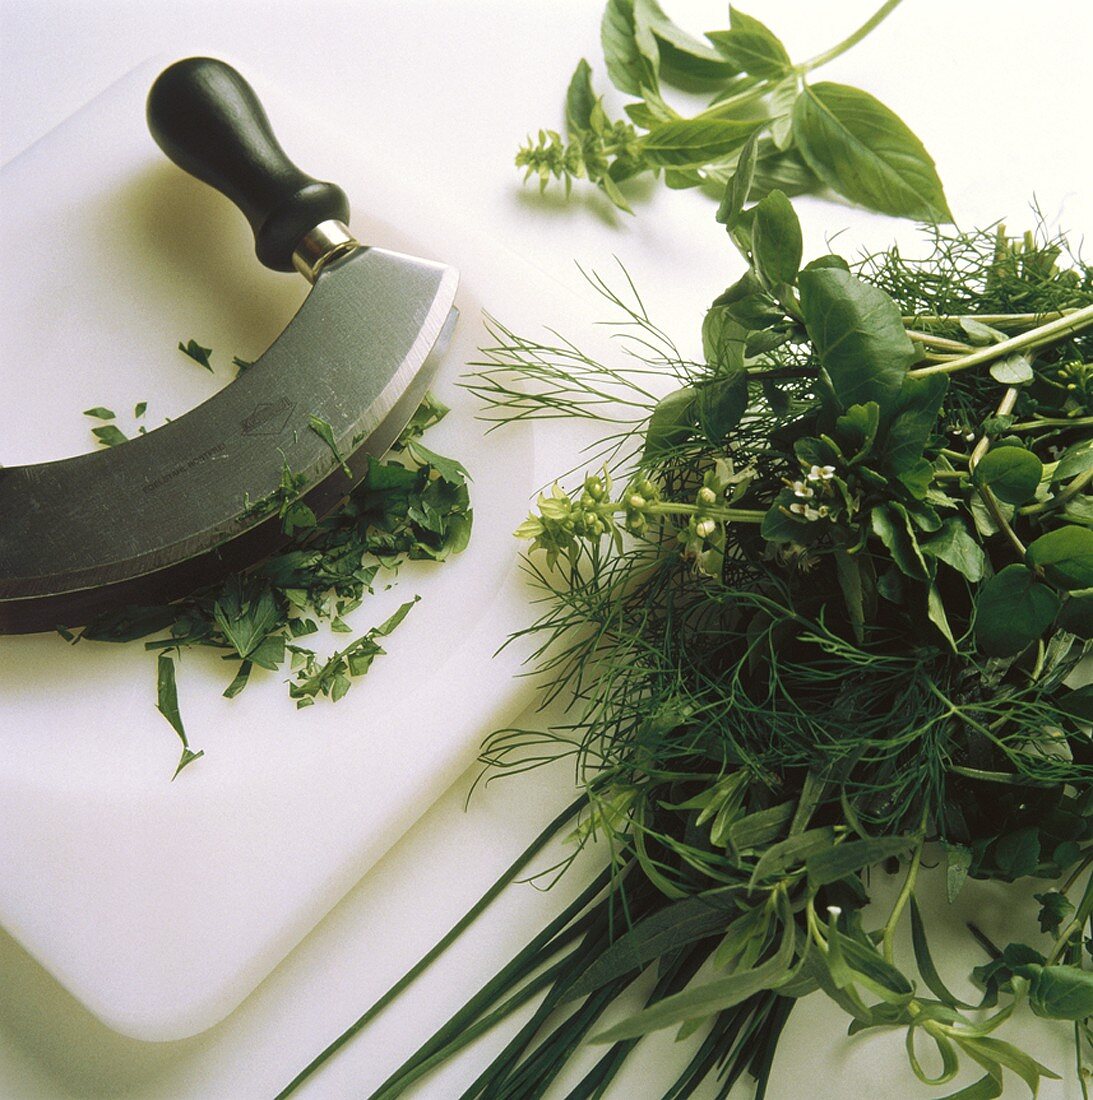 Preparing Herbs